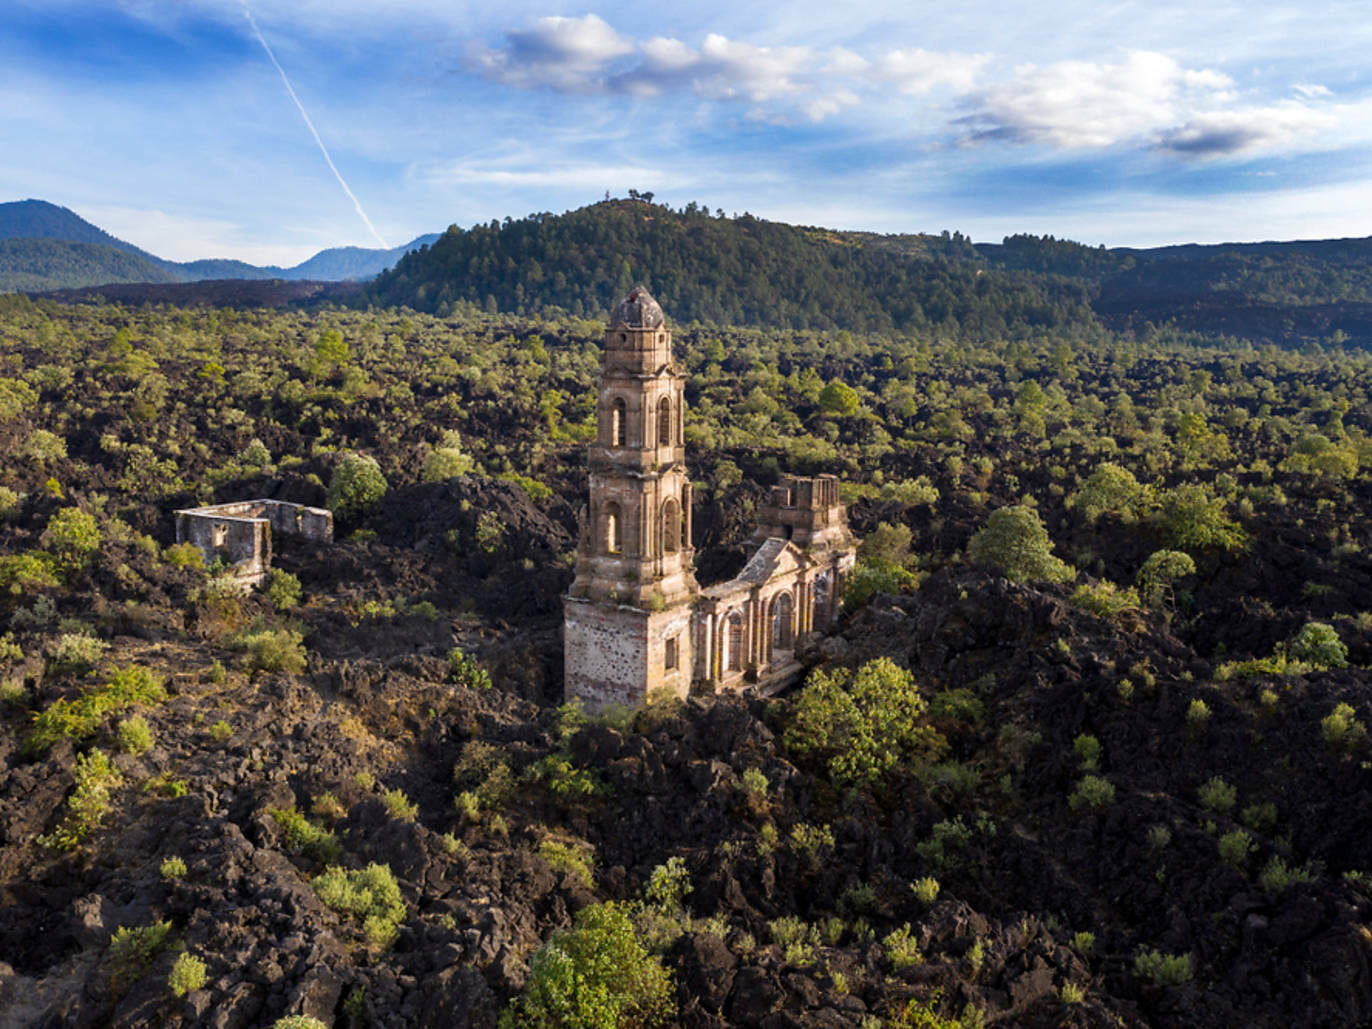 5 Unusual Churches in Bulgaria - Atlas Obscura